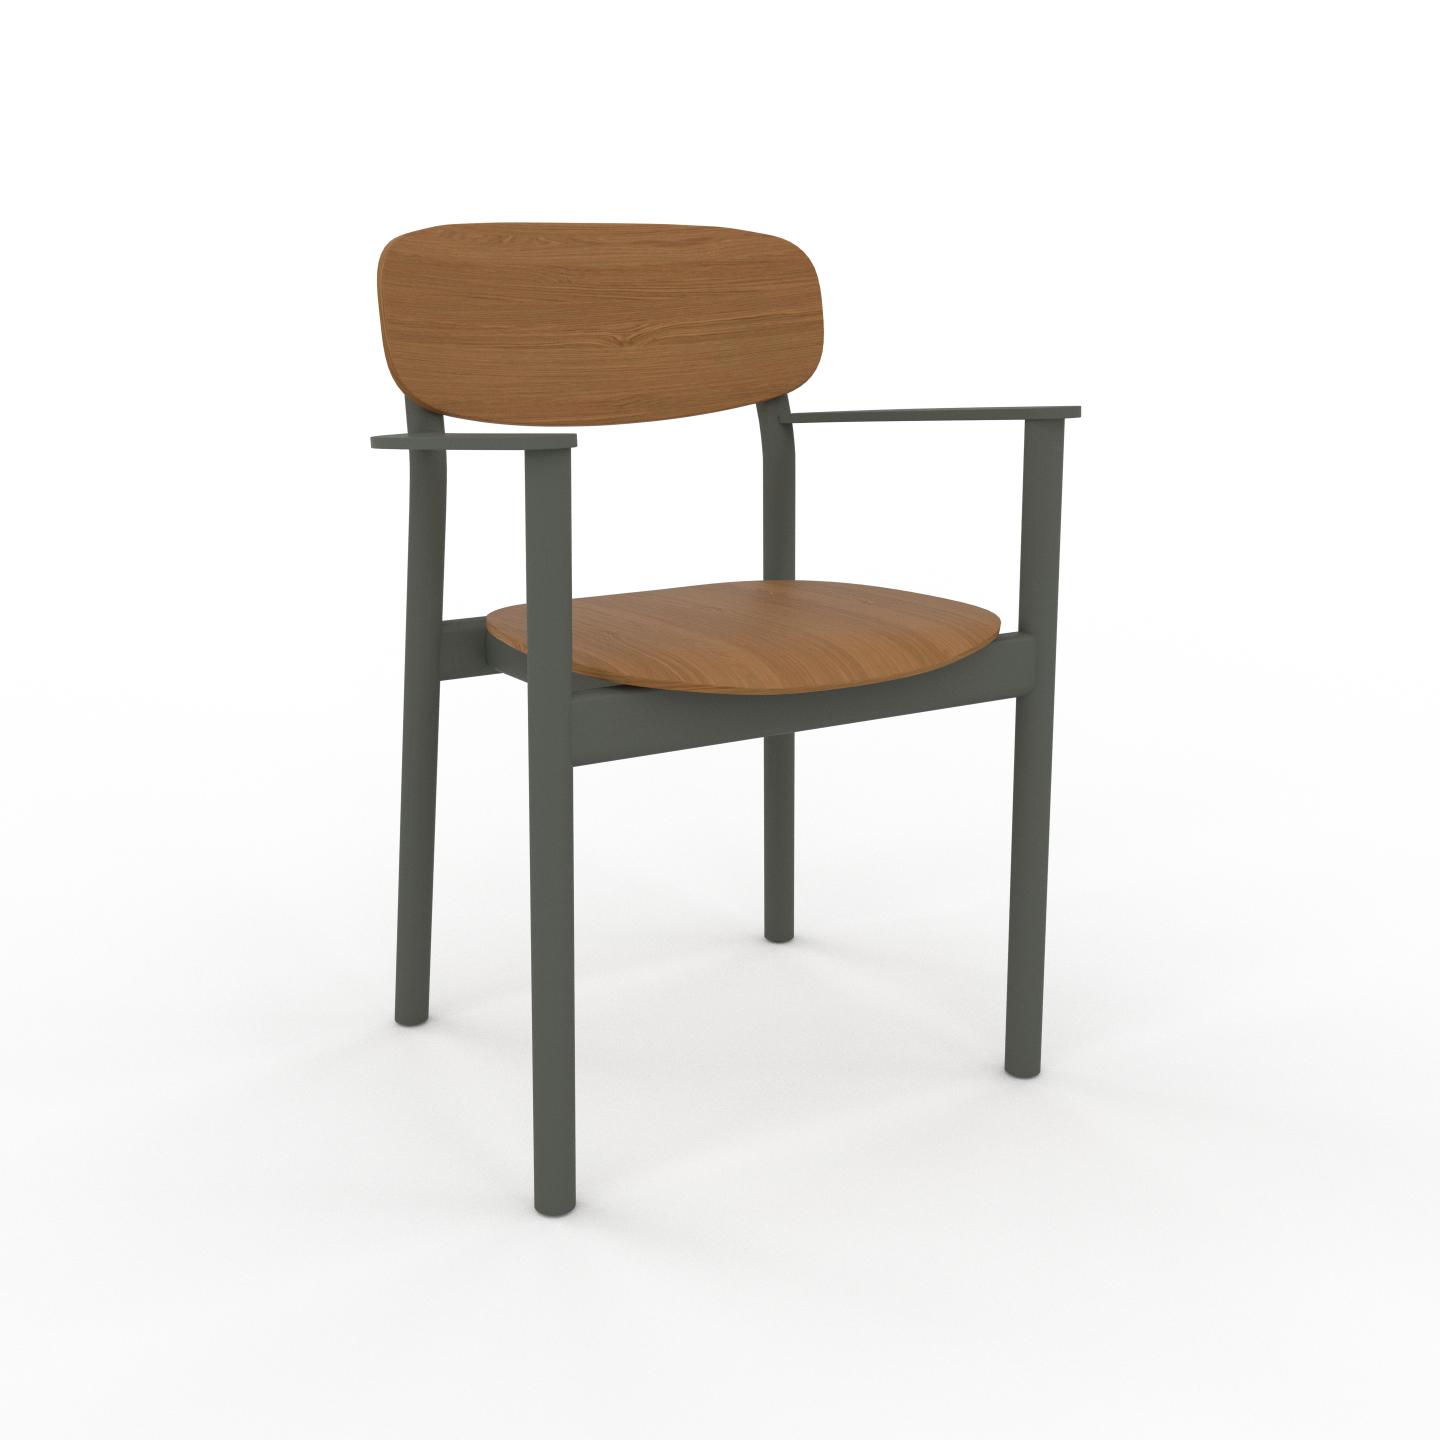 MYCS Stuhl in Eiche 52 x 82 x 58 cm einzigartiges Design, konfigurierbar